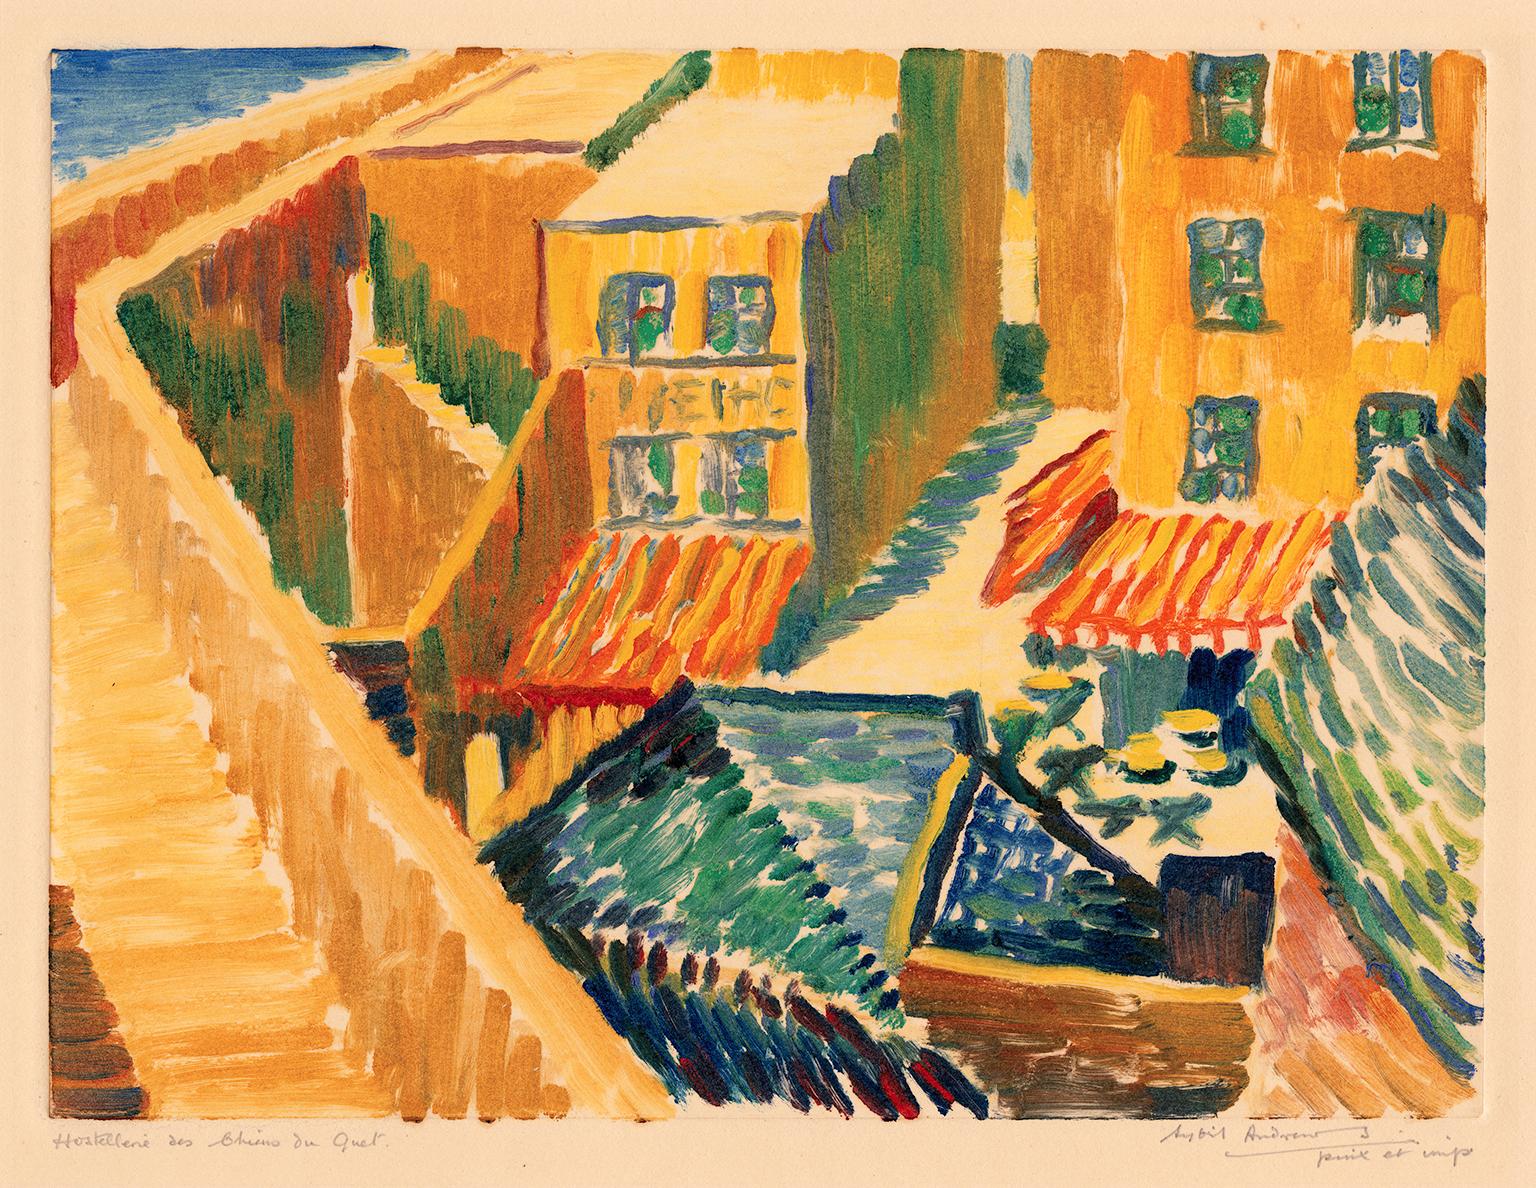 Figurative Print Sybil Andrews - Hostellerie des Chiens du Guet - Impressionnisme britannique des années 1920